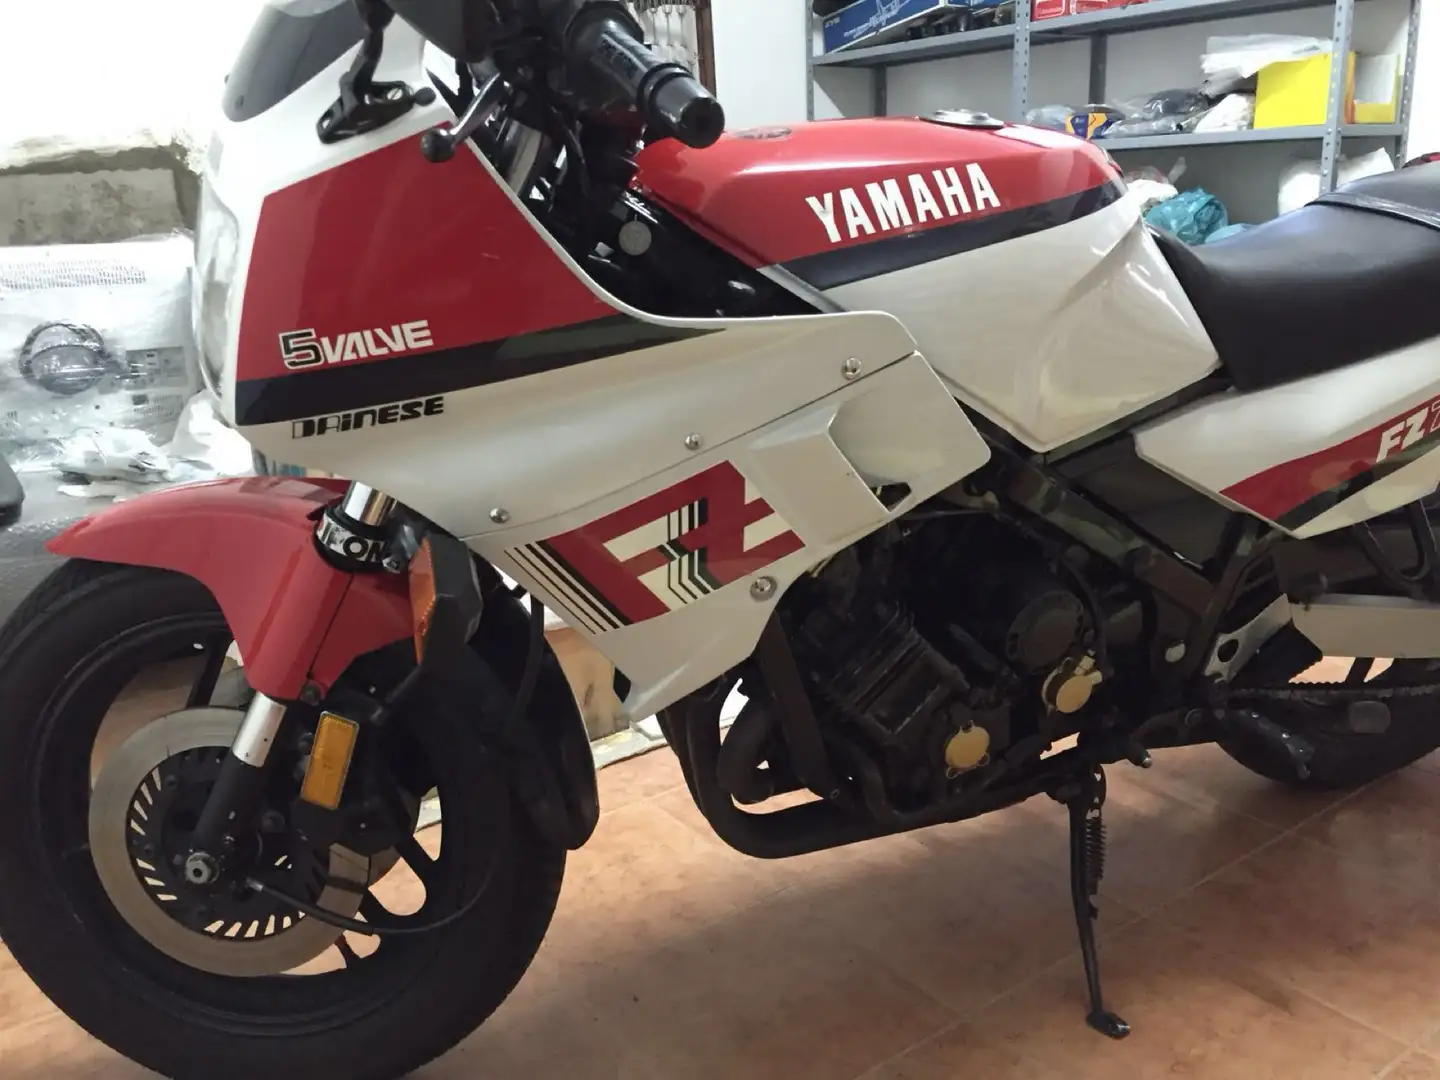 Yamaha FZ 750 immatricolazione canada colorazione bianca rossa Blanc - 1